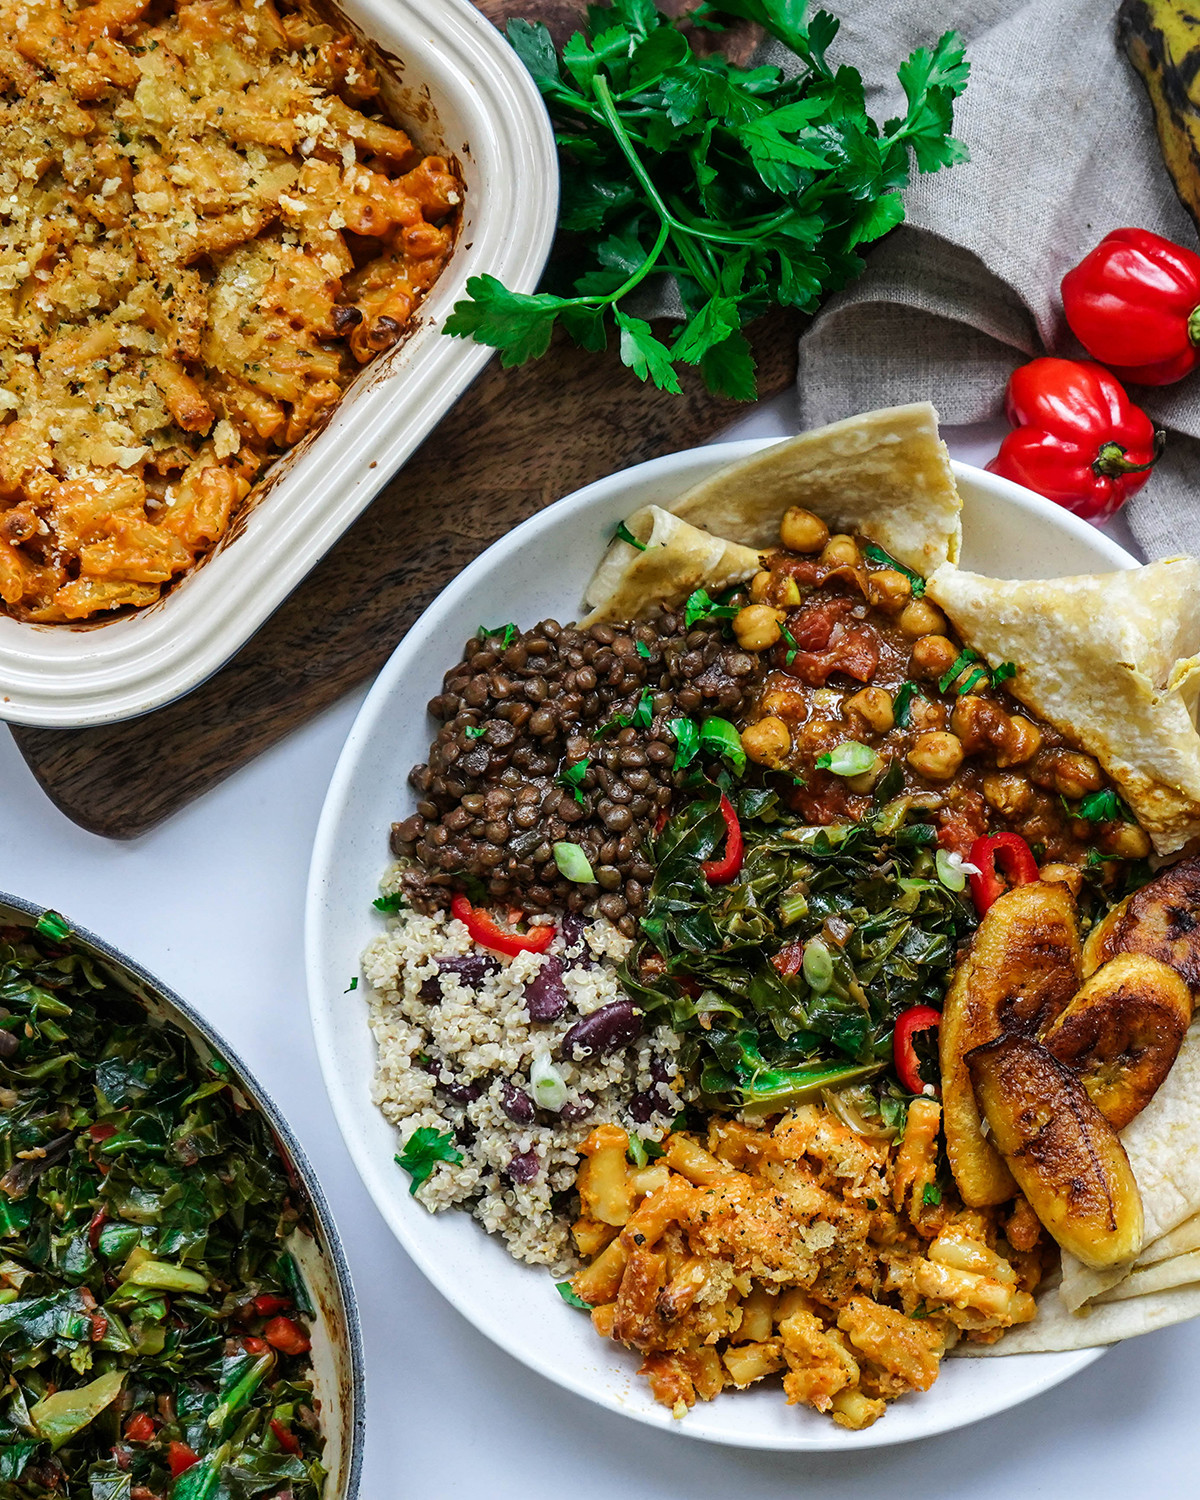 Top 15 Most Popular Caribbean Vegan Recipes